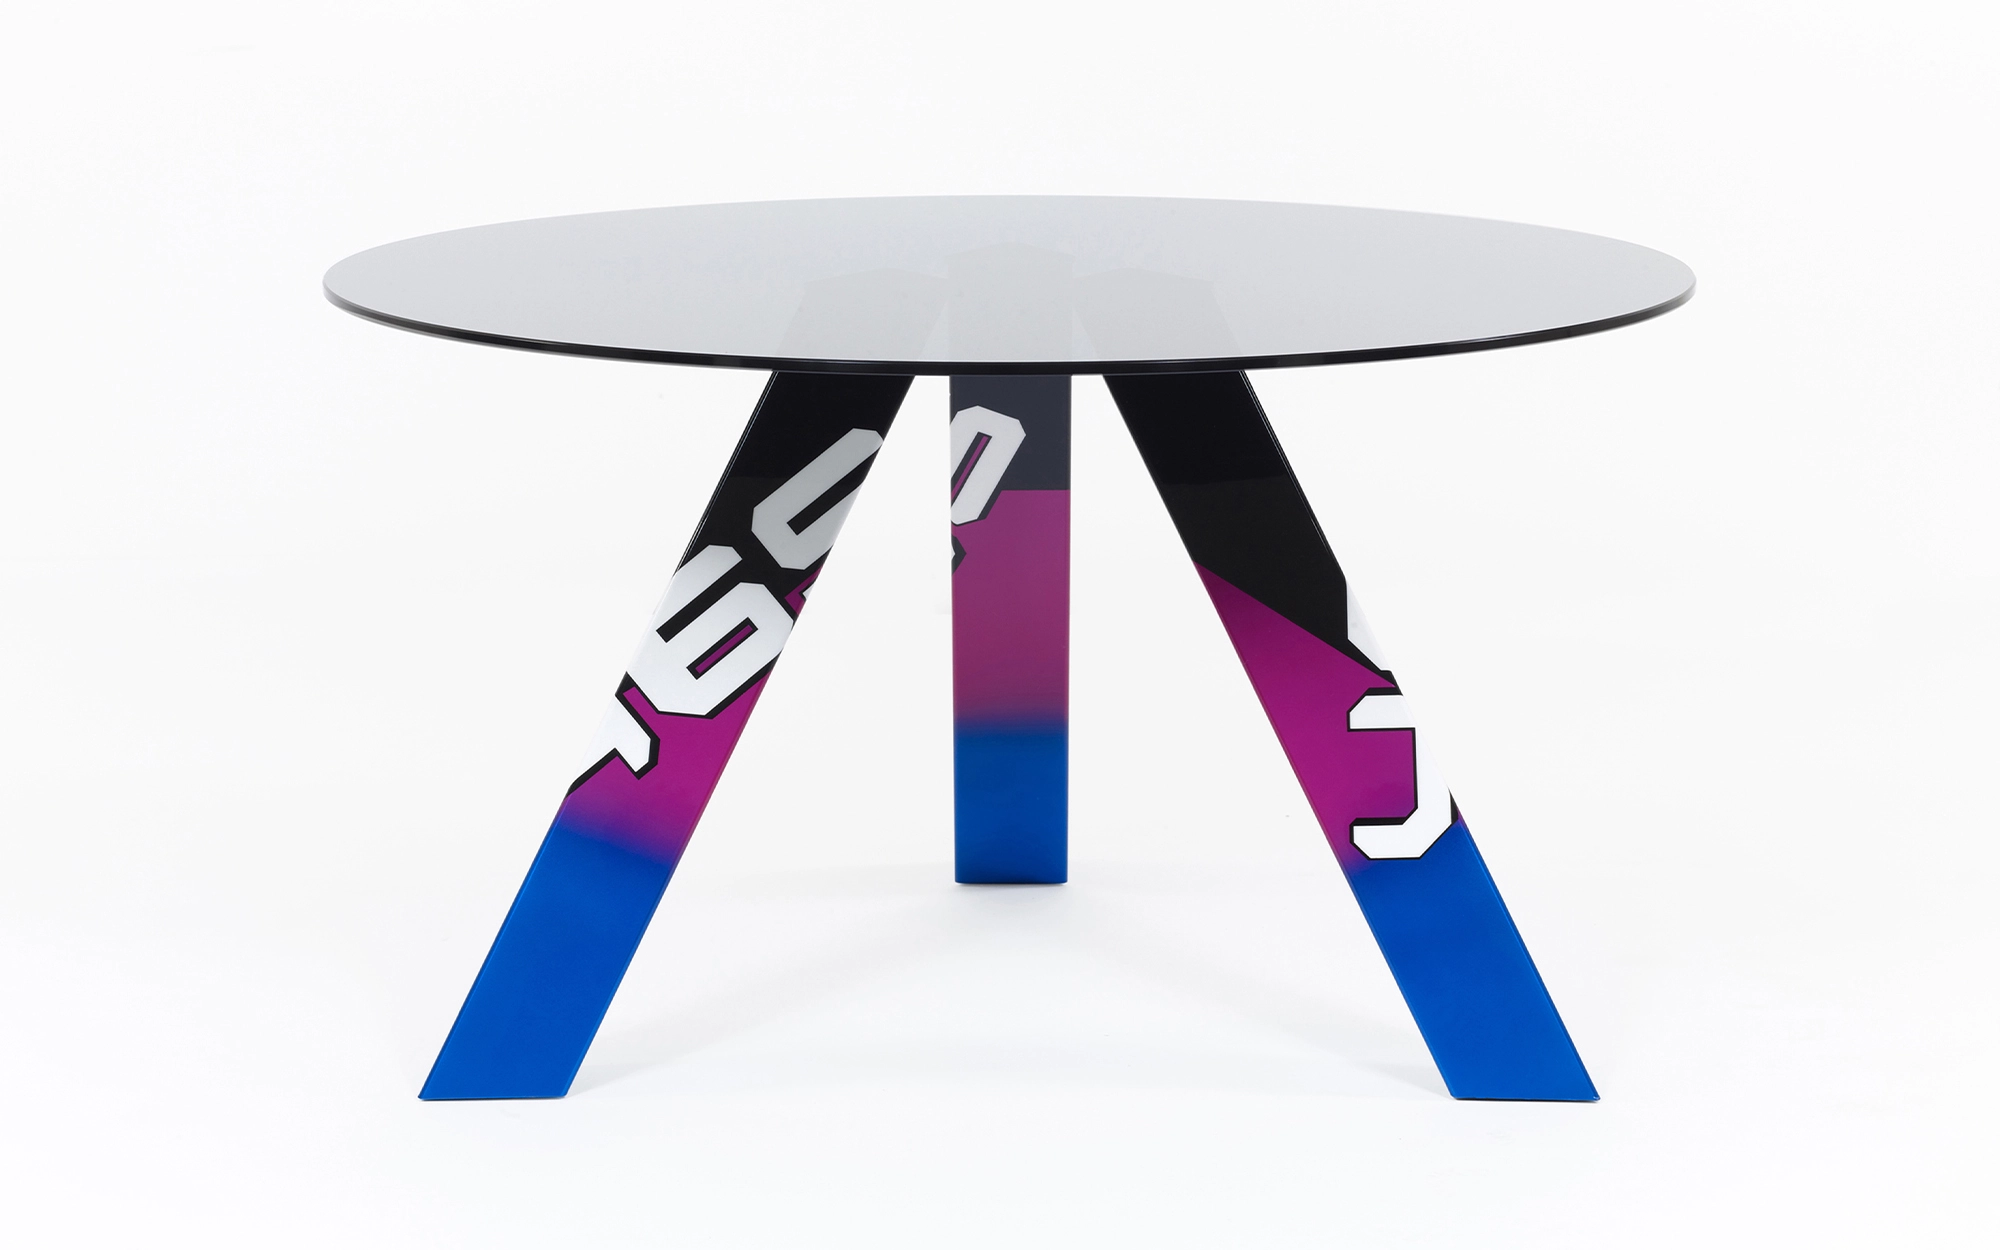 465 Table - Konstantin Grcic - Pendant light - Galerie kreo